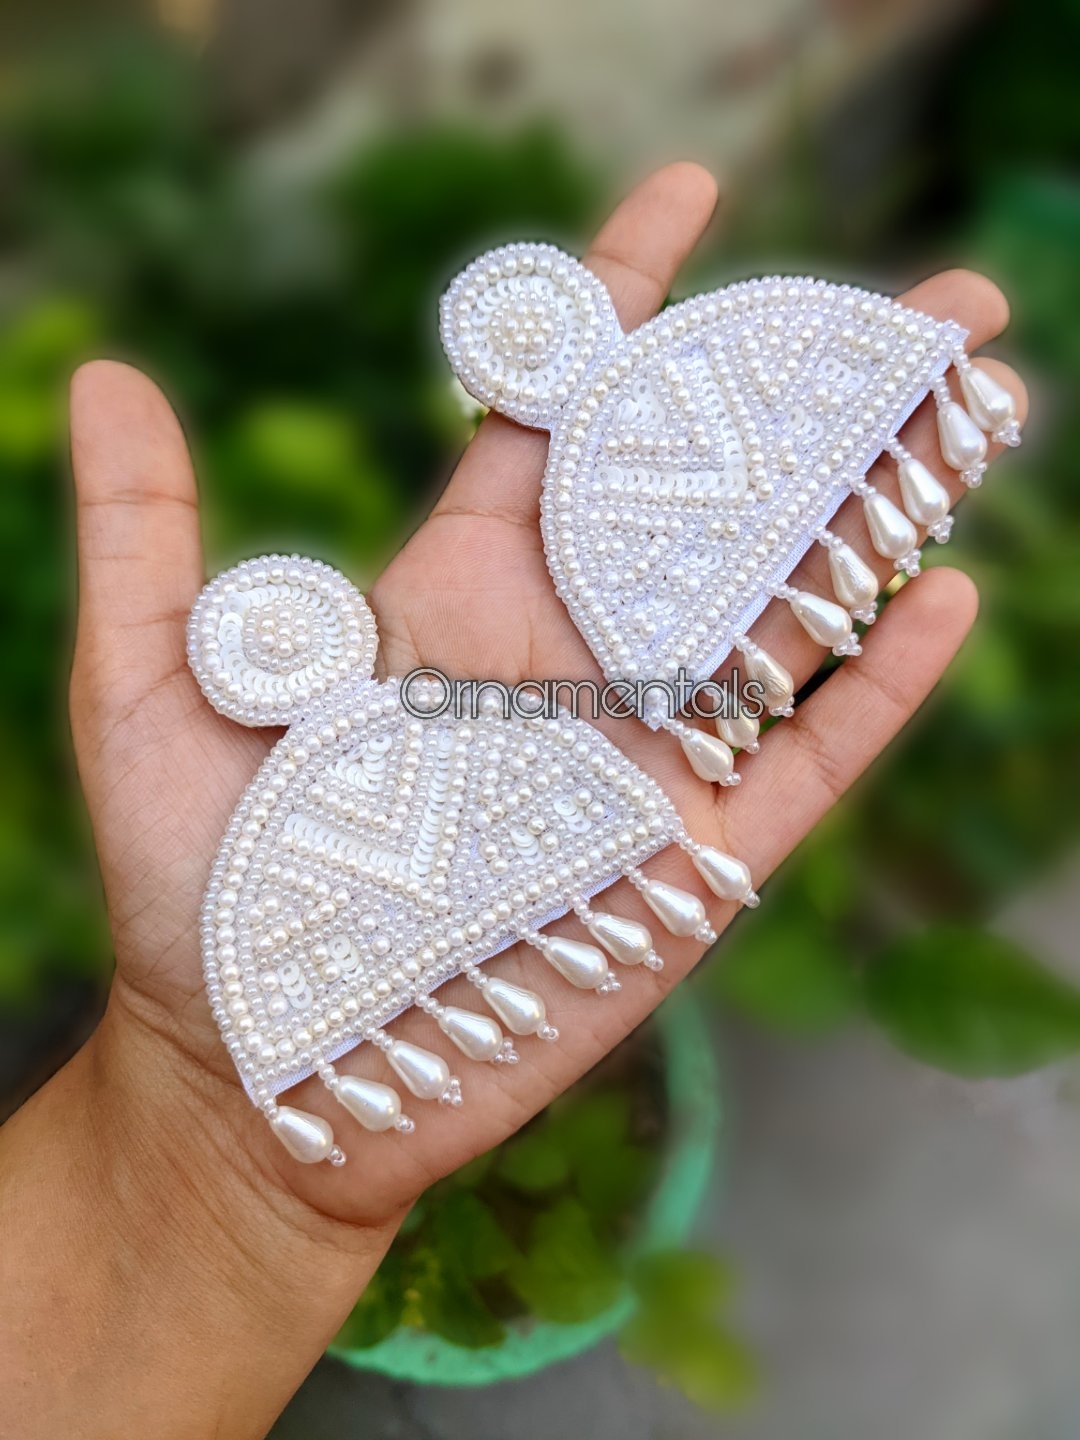 10 Indian Handmade Earring Designers on Instagram